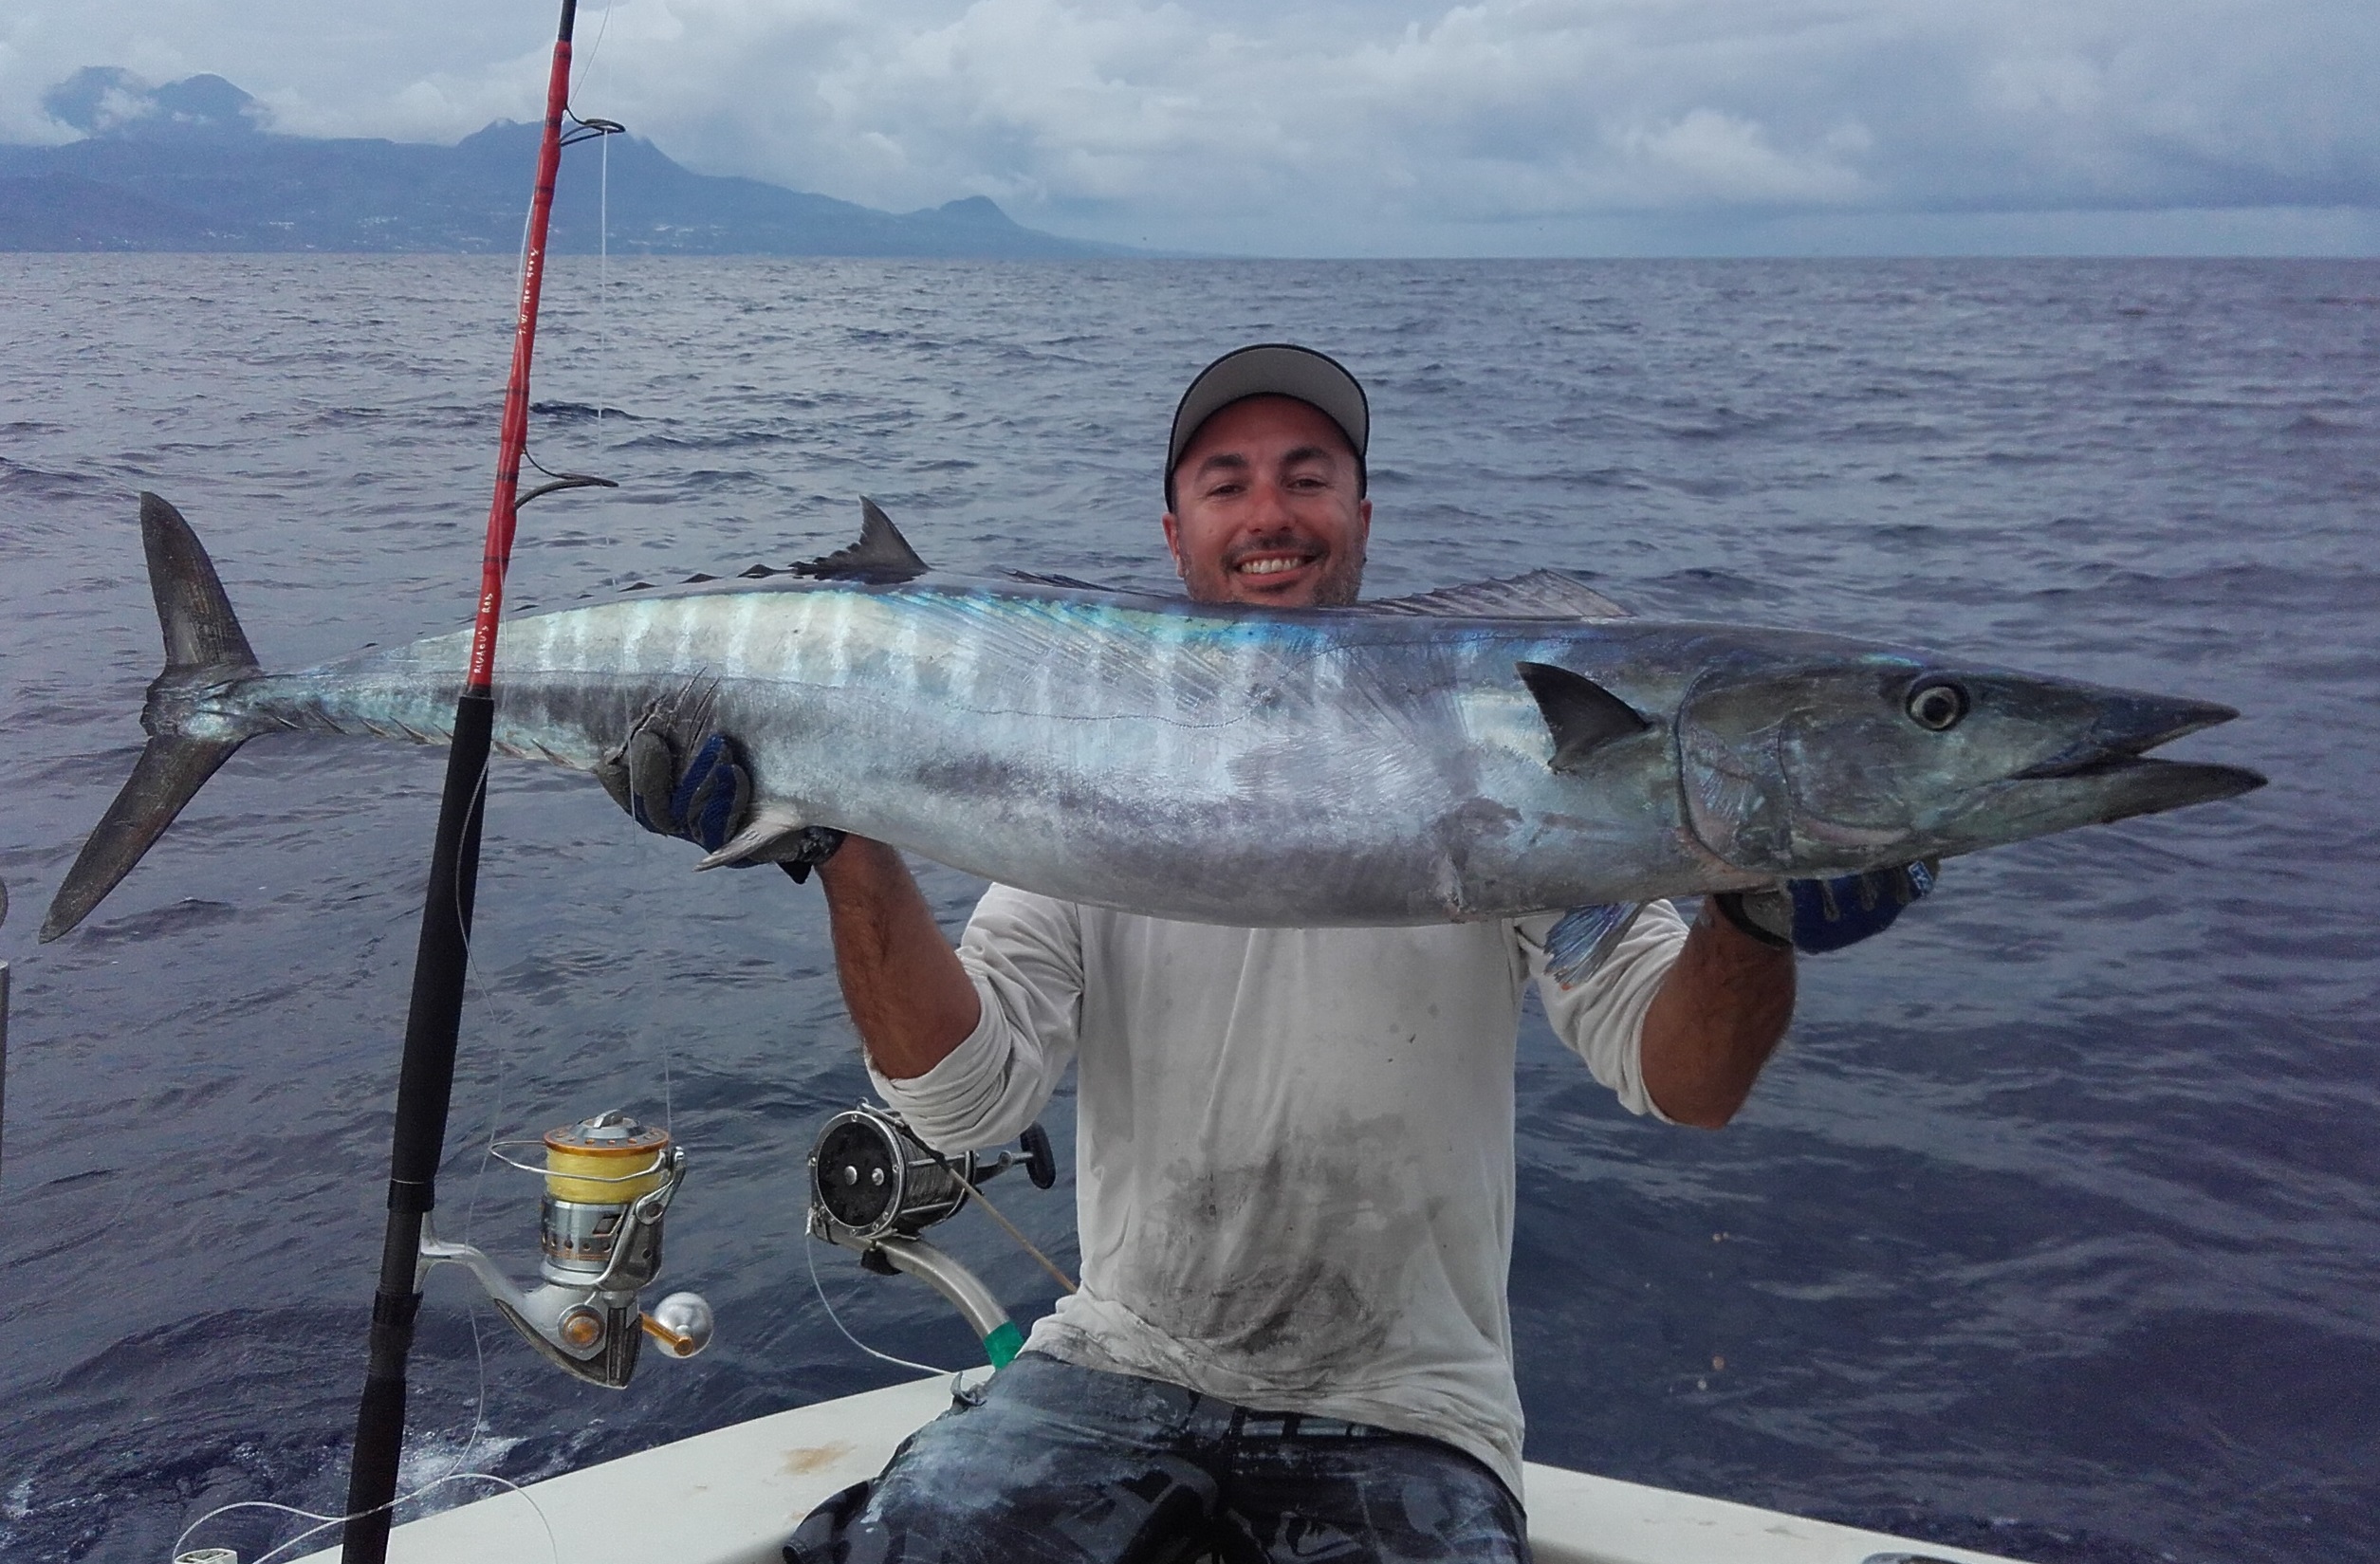 Le wahoo – Julien BROSSEL, Guide de pêche sportive en Guadeloupe